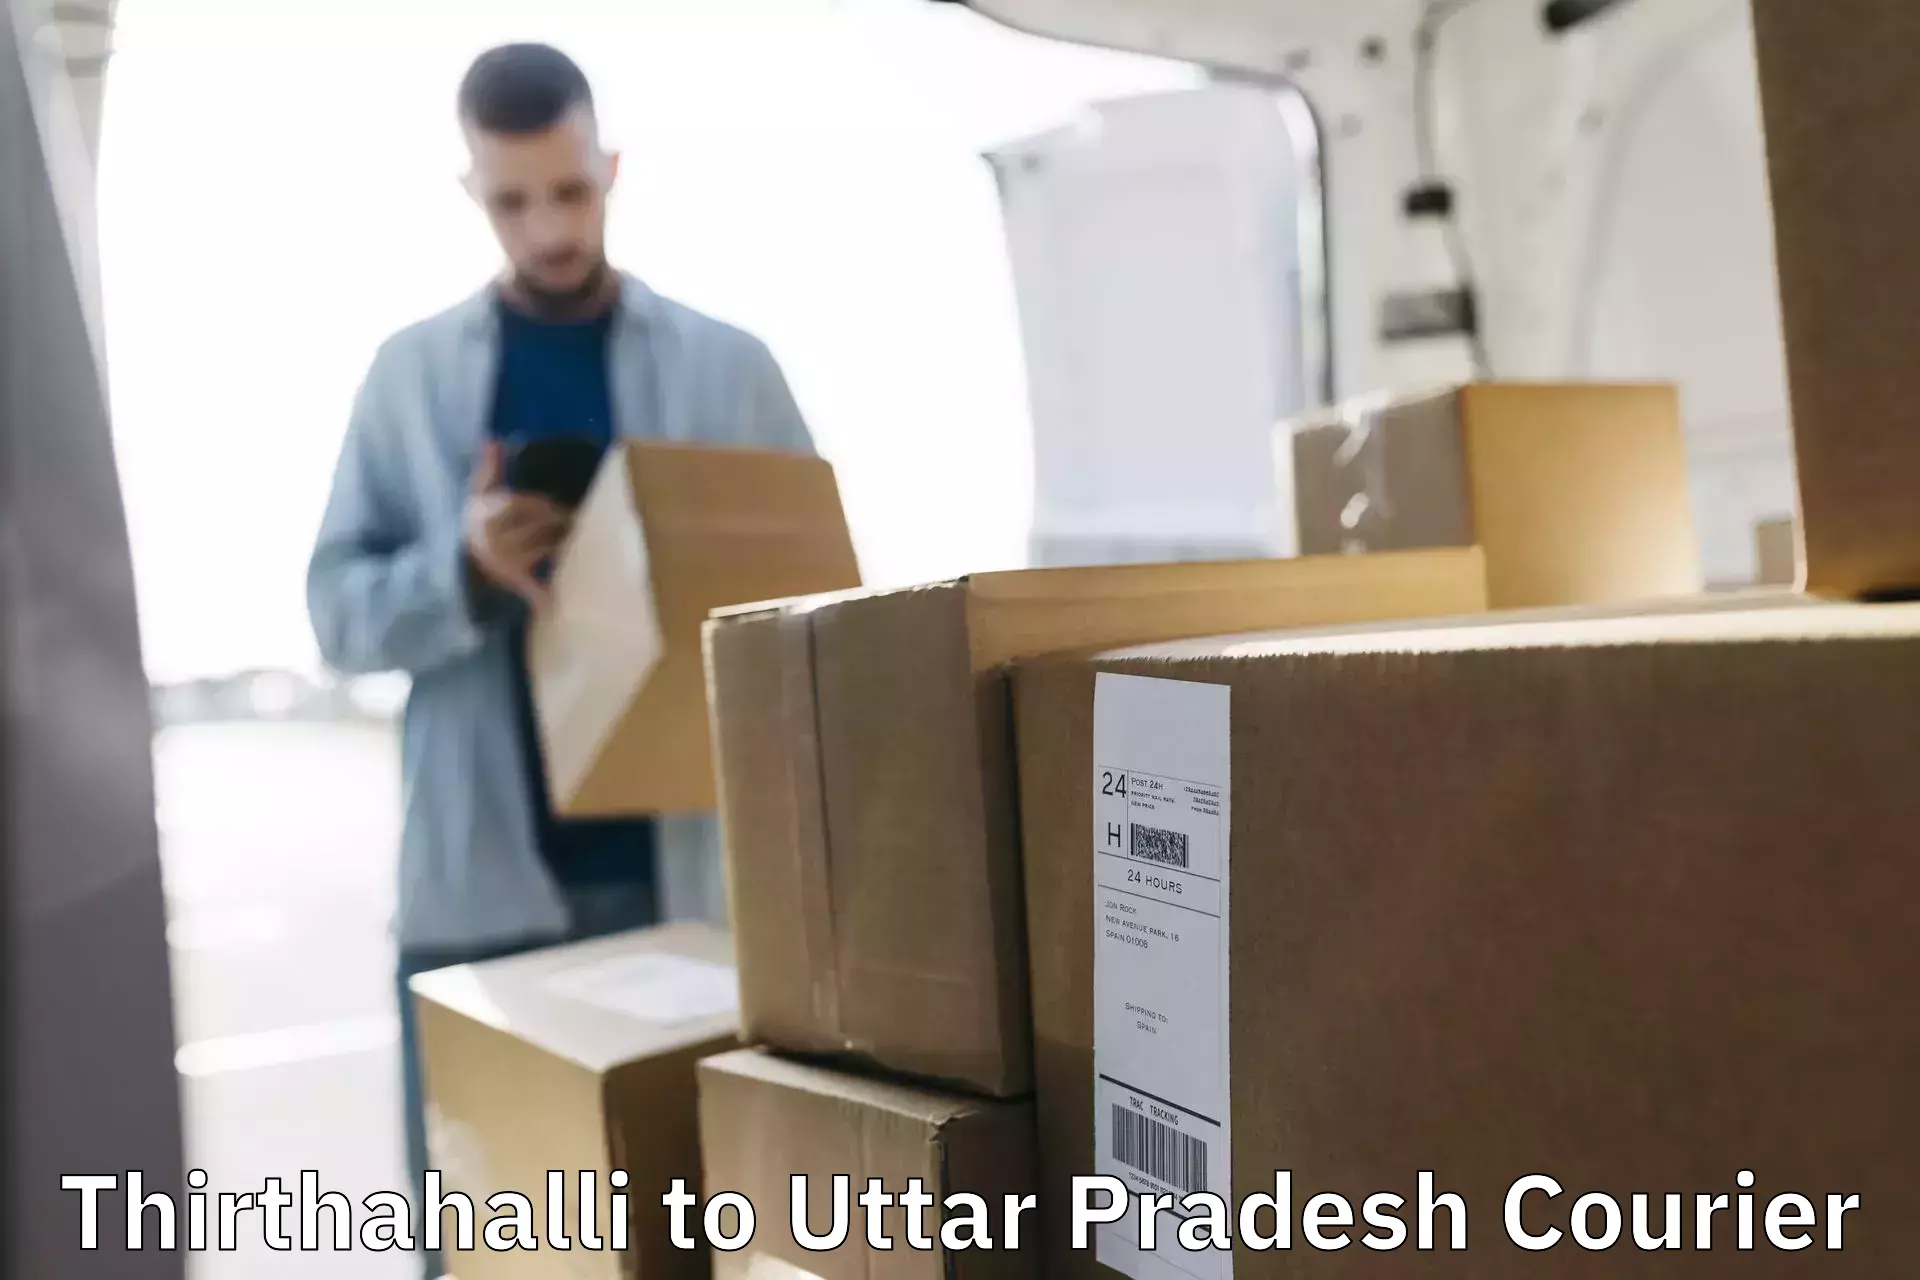 Professional courier services Thirthahalli to Muzaffarnagar